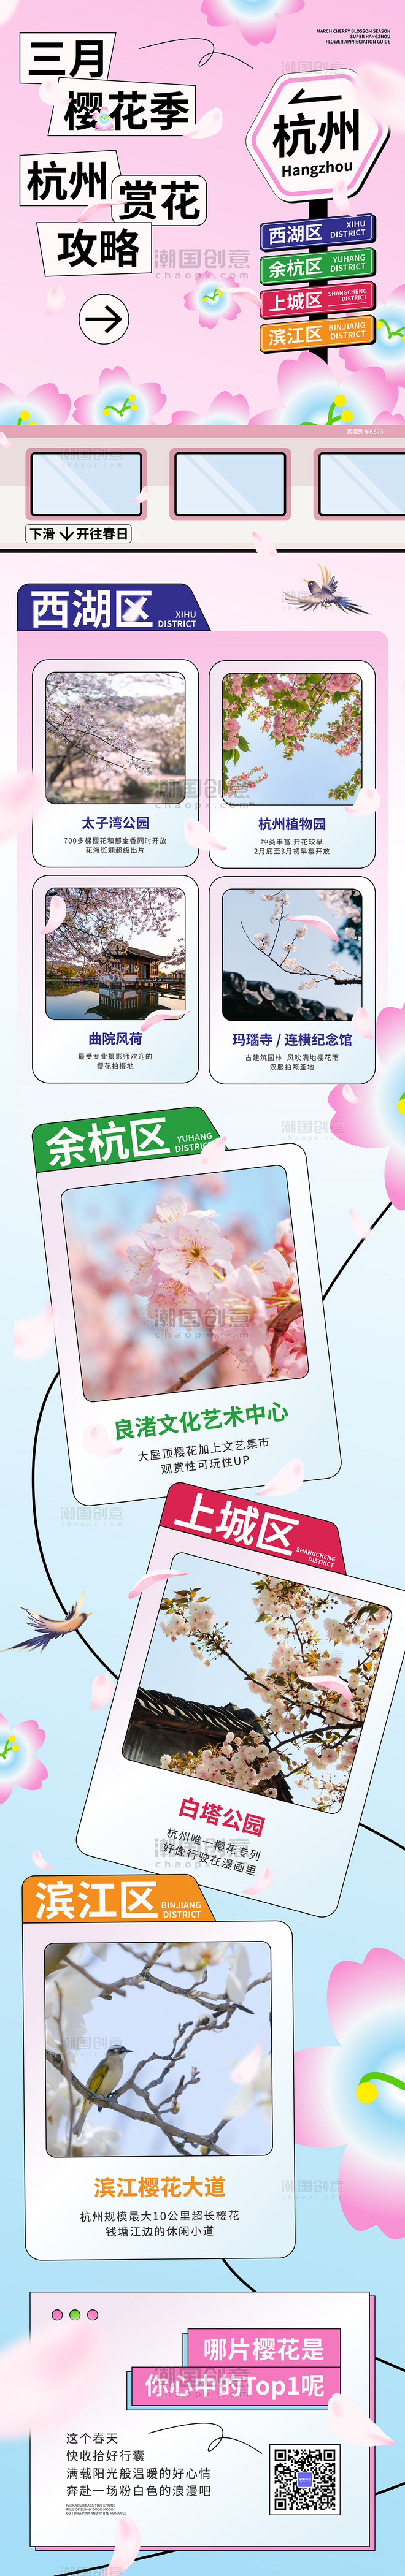 樱花季杭州赏樱攻略黑描扁平风营销长图